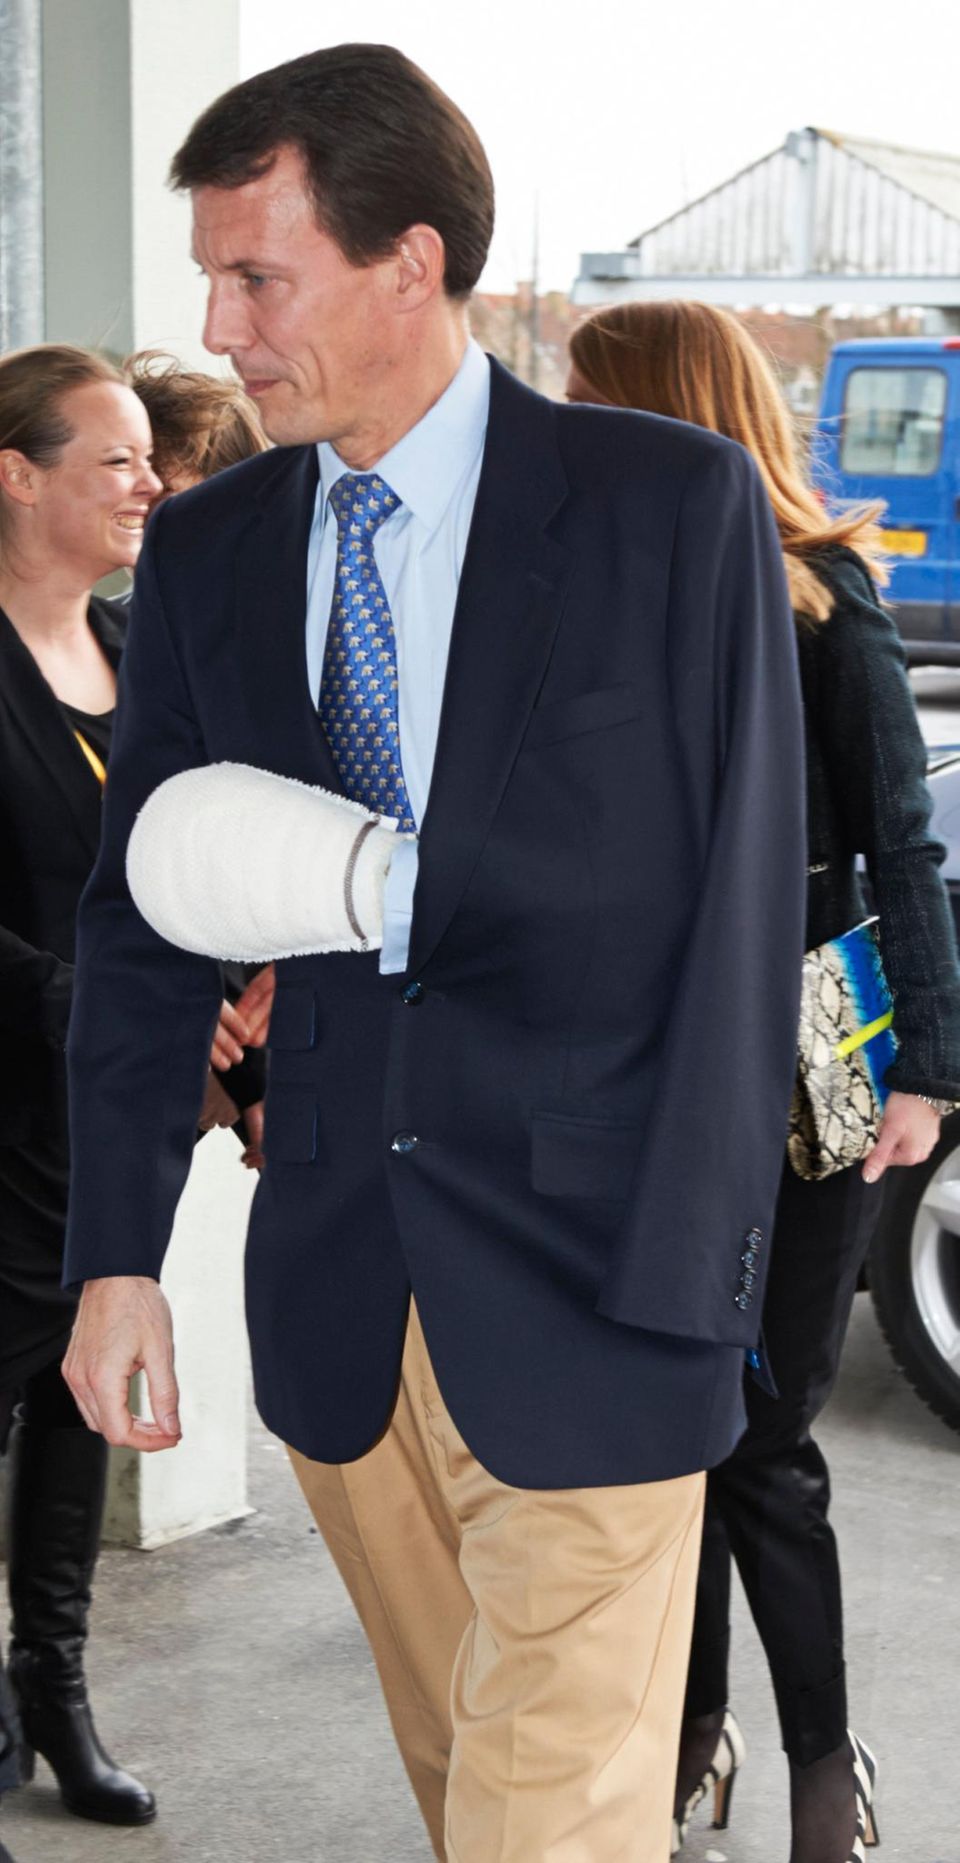 Startklar für den Boxring: Prinz Joachim von Dänemark trägt 2013 nach einer Handoperation einen überdimensional großen Gips. Die Ursache: eine gutartige Bindegewebserkankung, die häufig zu einer Einschränkung der Bewegungsfähigkeit führt.